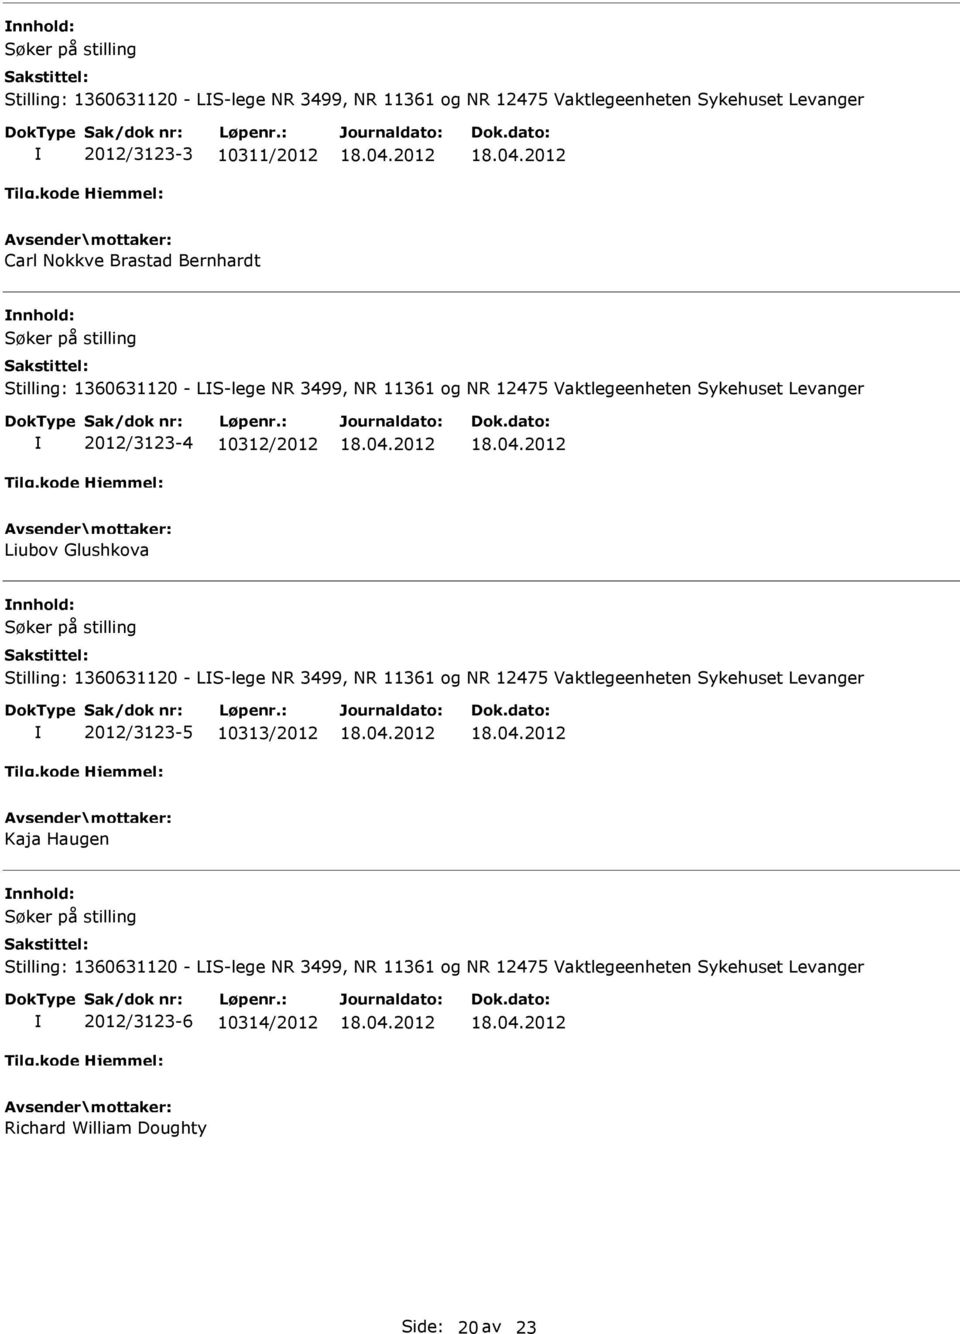 Glushkova Stilling: 1360631120 - LS-lege NR 3499, NR 11361 og NR 12475 Vaktlegeenheten Sykehuset Levanger 2012/3123-5 10313/2012 Kaja Haugen